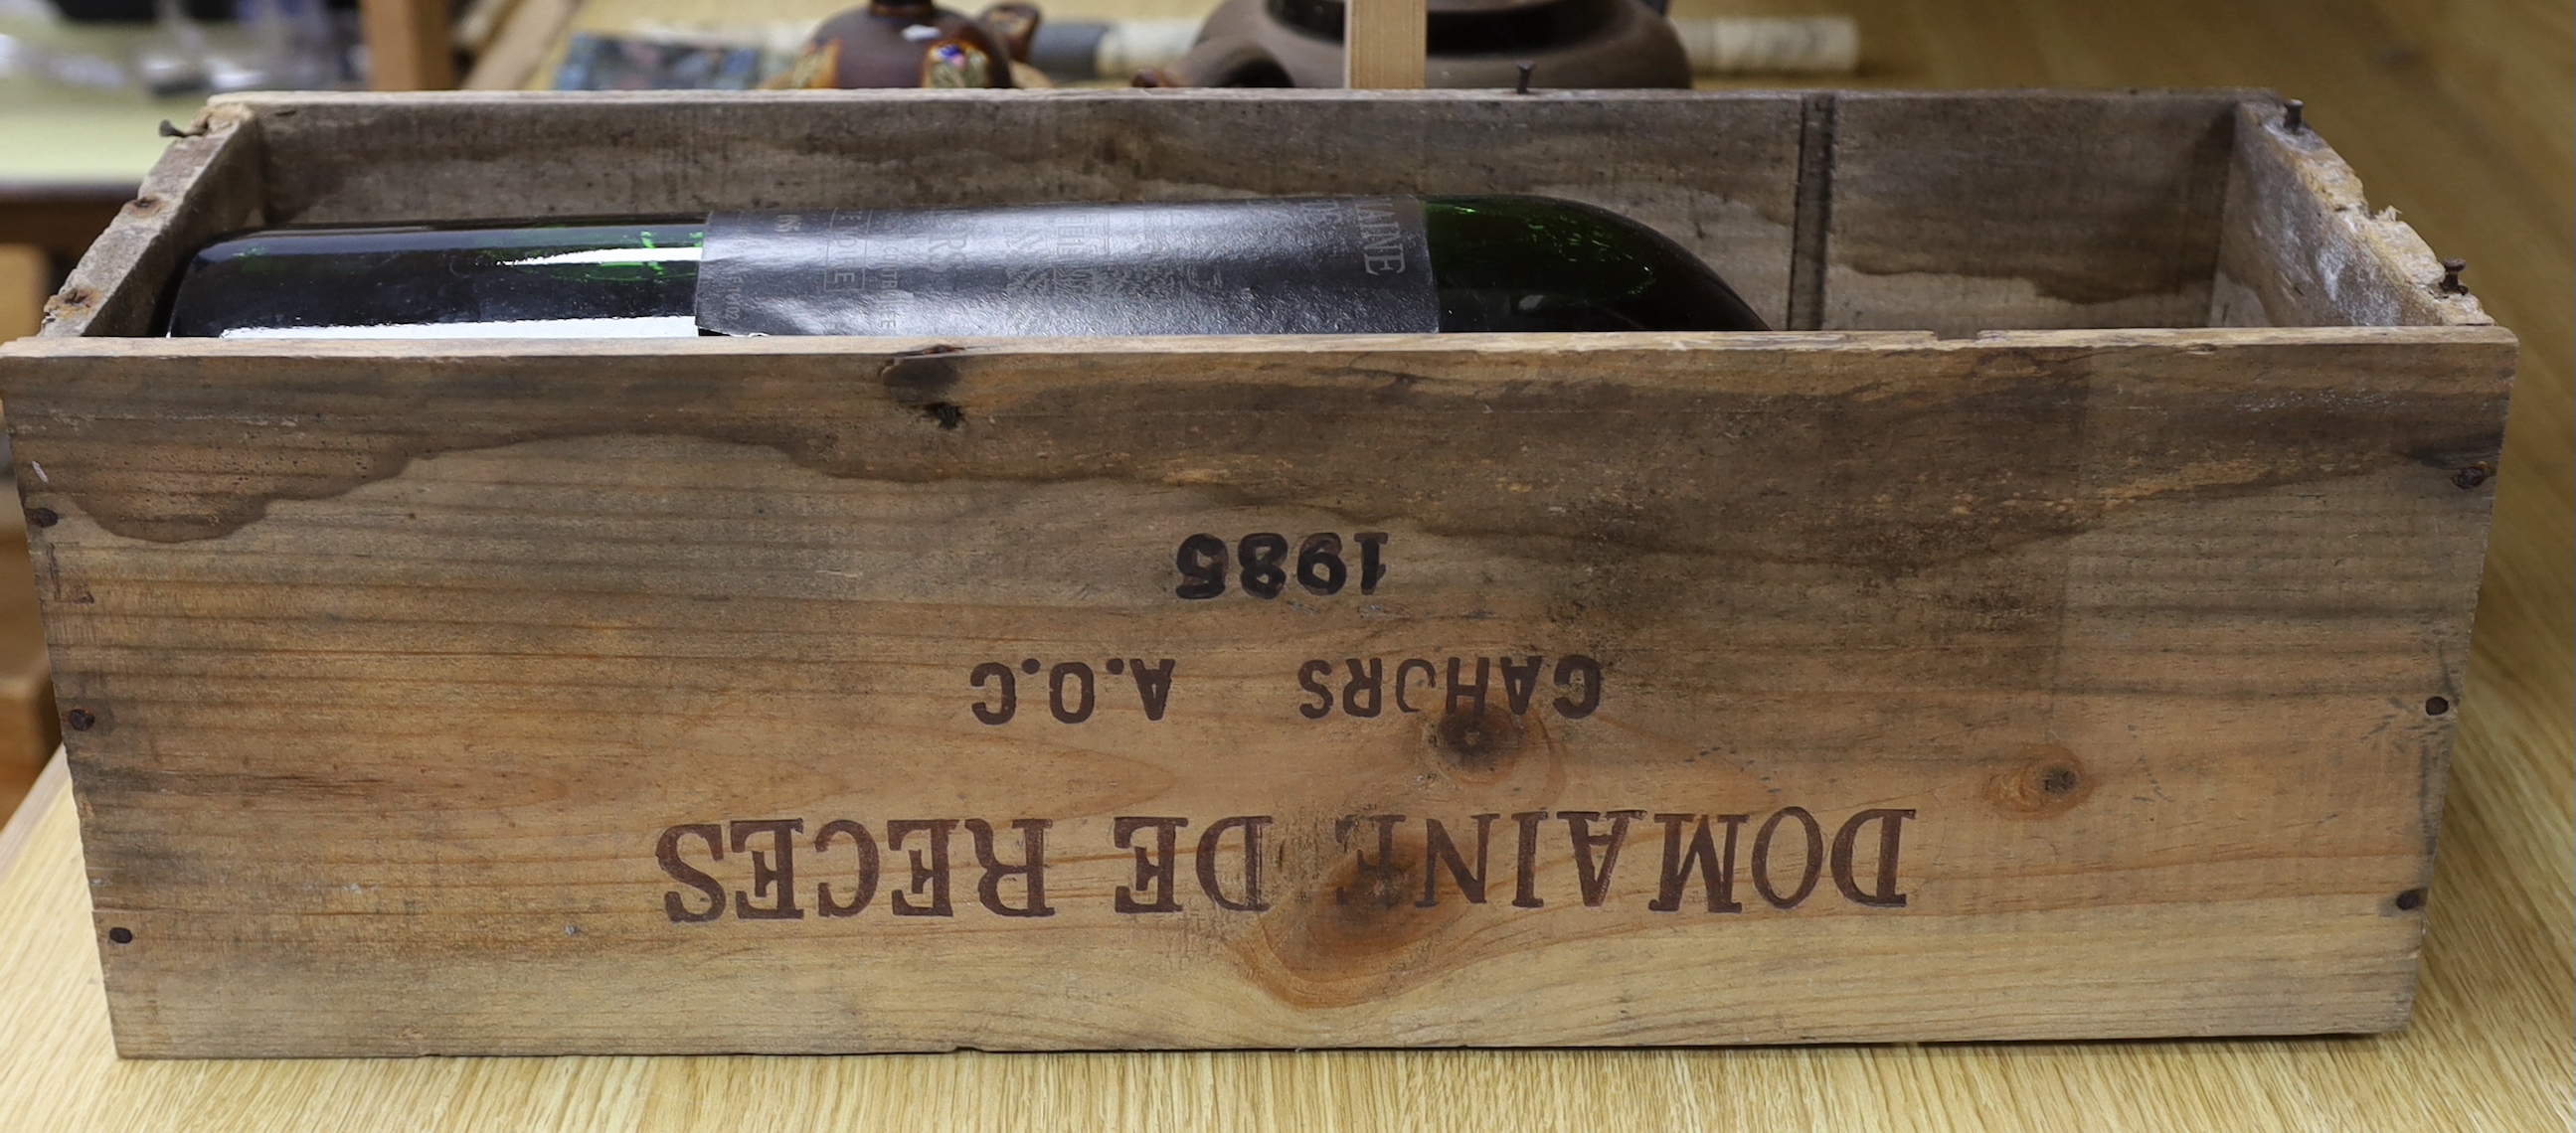 A cased six litre bottle of 1989 Cahors, Demaine de Reces, wine - Image 3 of 3